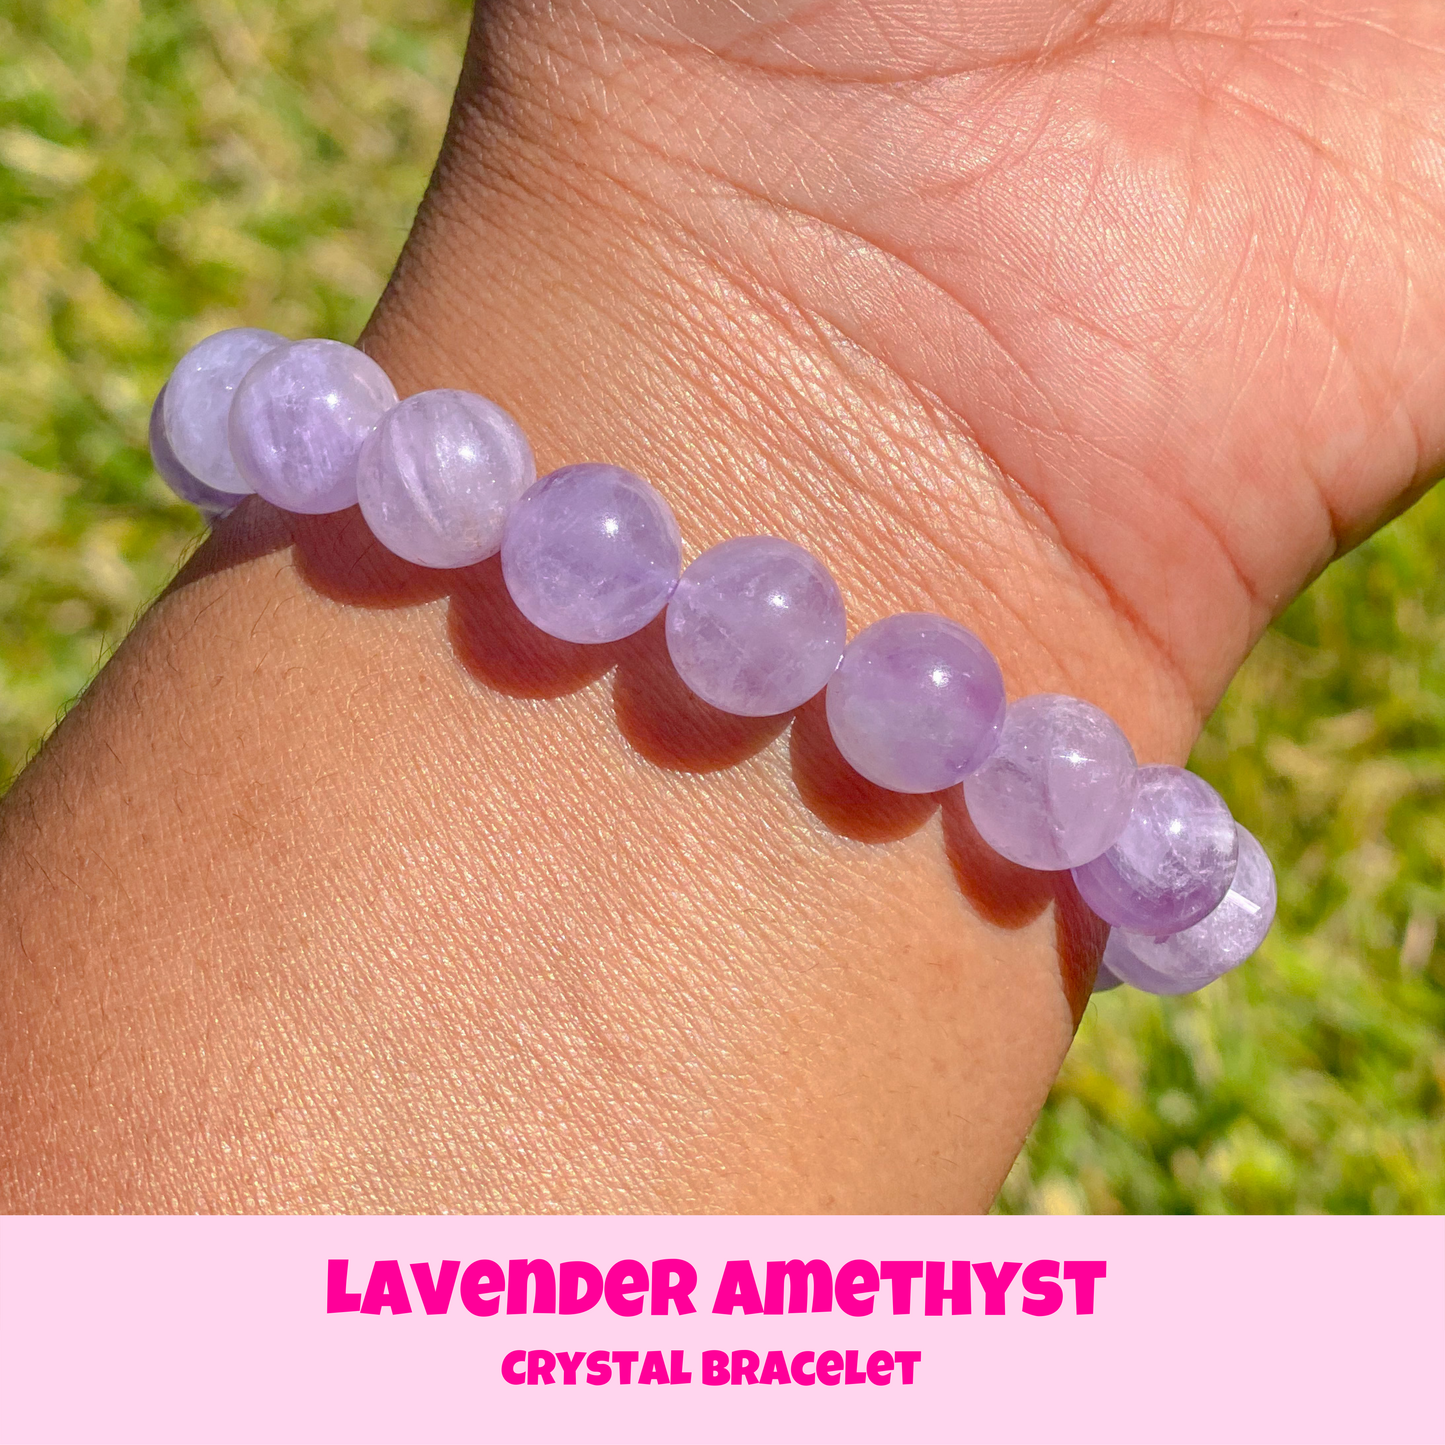 Lavender Amethyst Crystal Bracelet